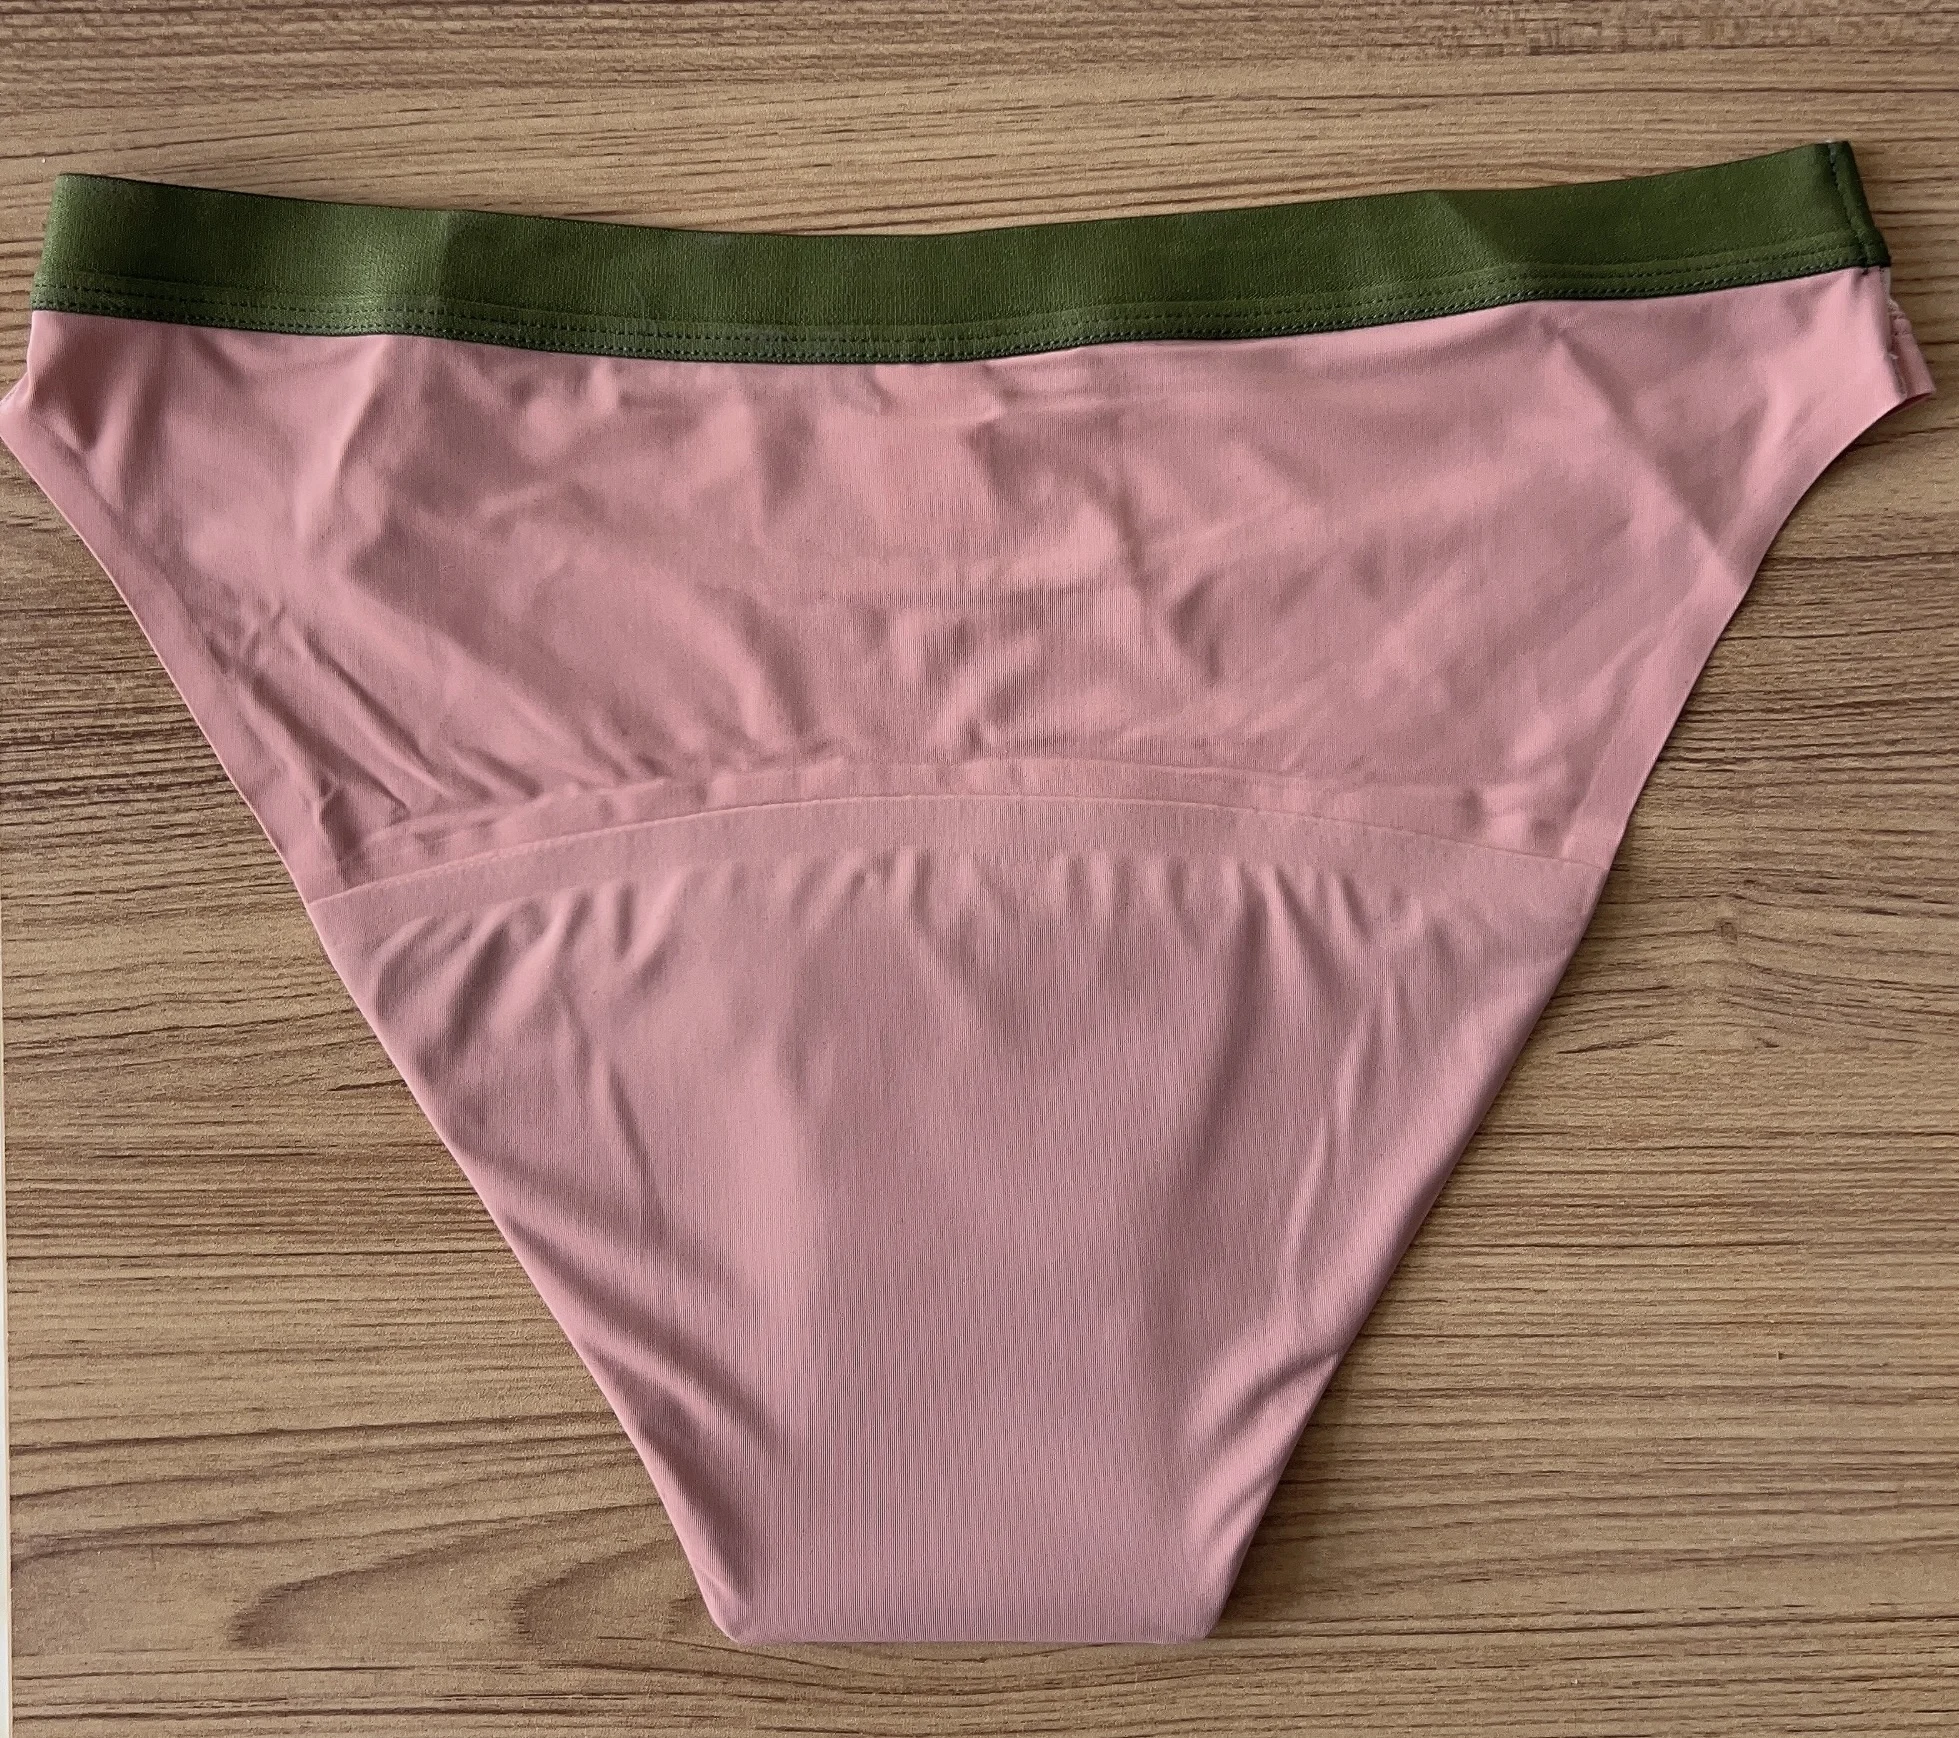 Oem Period Panties Menstrual Panties Panty Sustainable Leakproof Sanitary Briefs Breathable